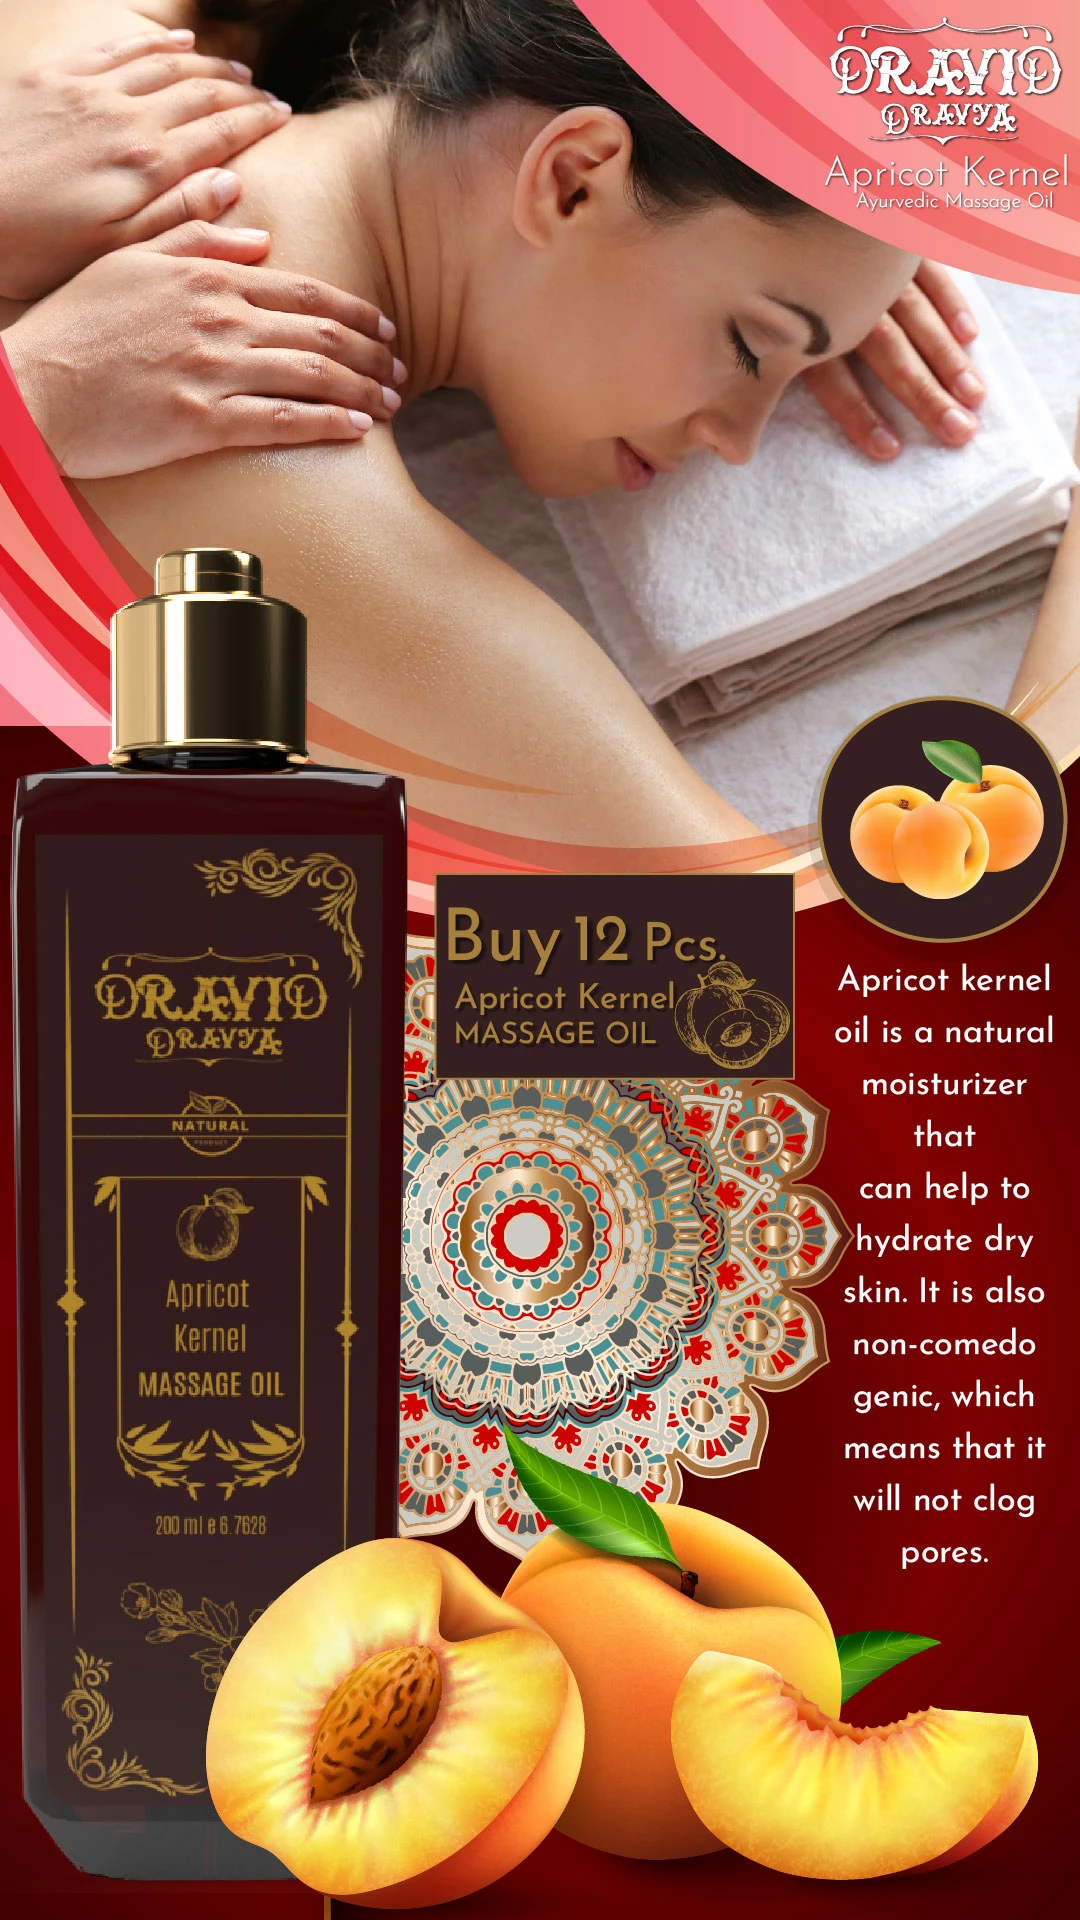 RBV B2B Apricot Kernel  Massage Oil (200ml)-12 Pcs.